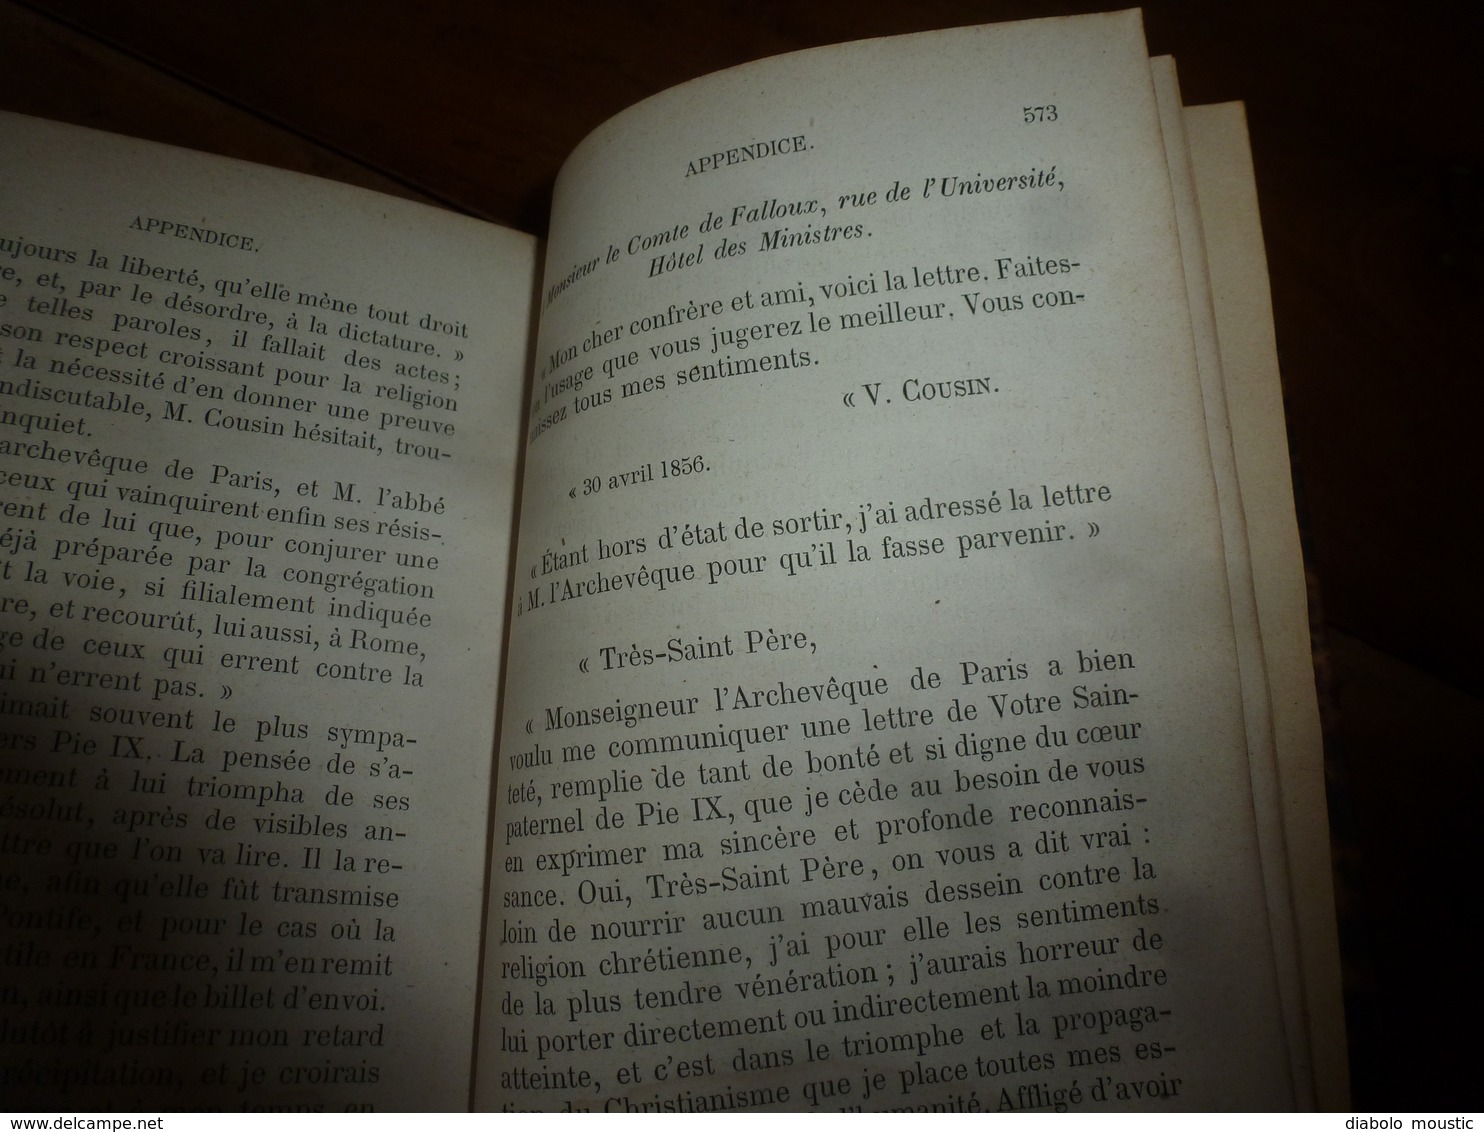 1872 Correspondance du R. P. LACORDAIRE et de Madame SWETCHINE  -   Publié par le Comte de Falloux